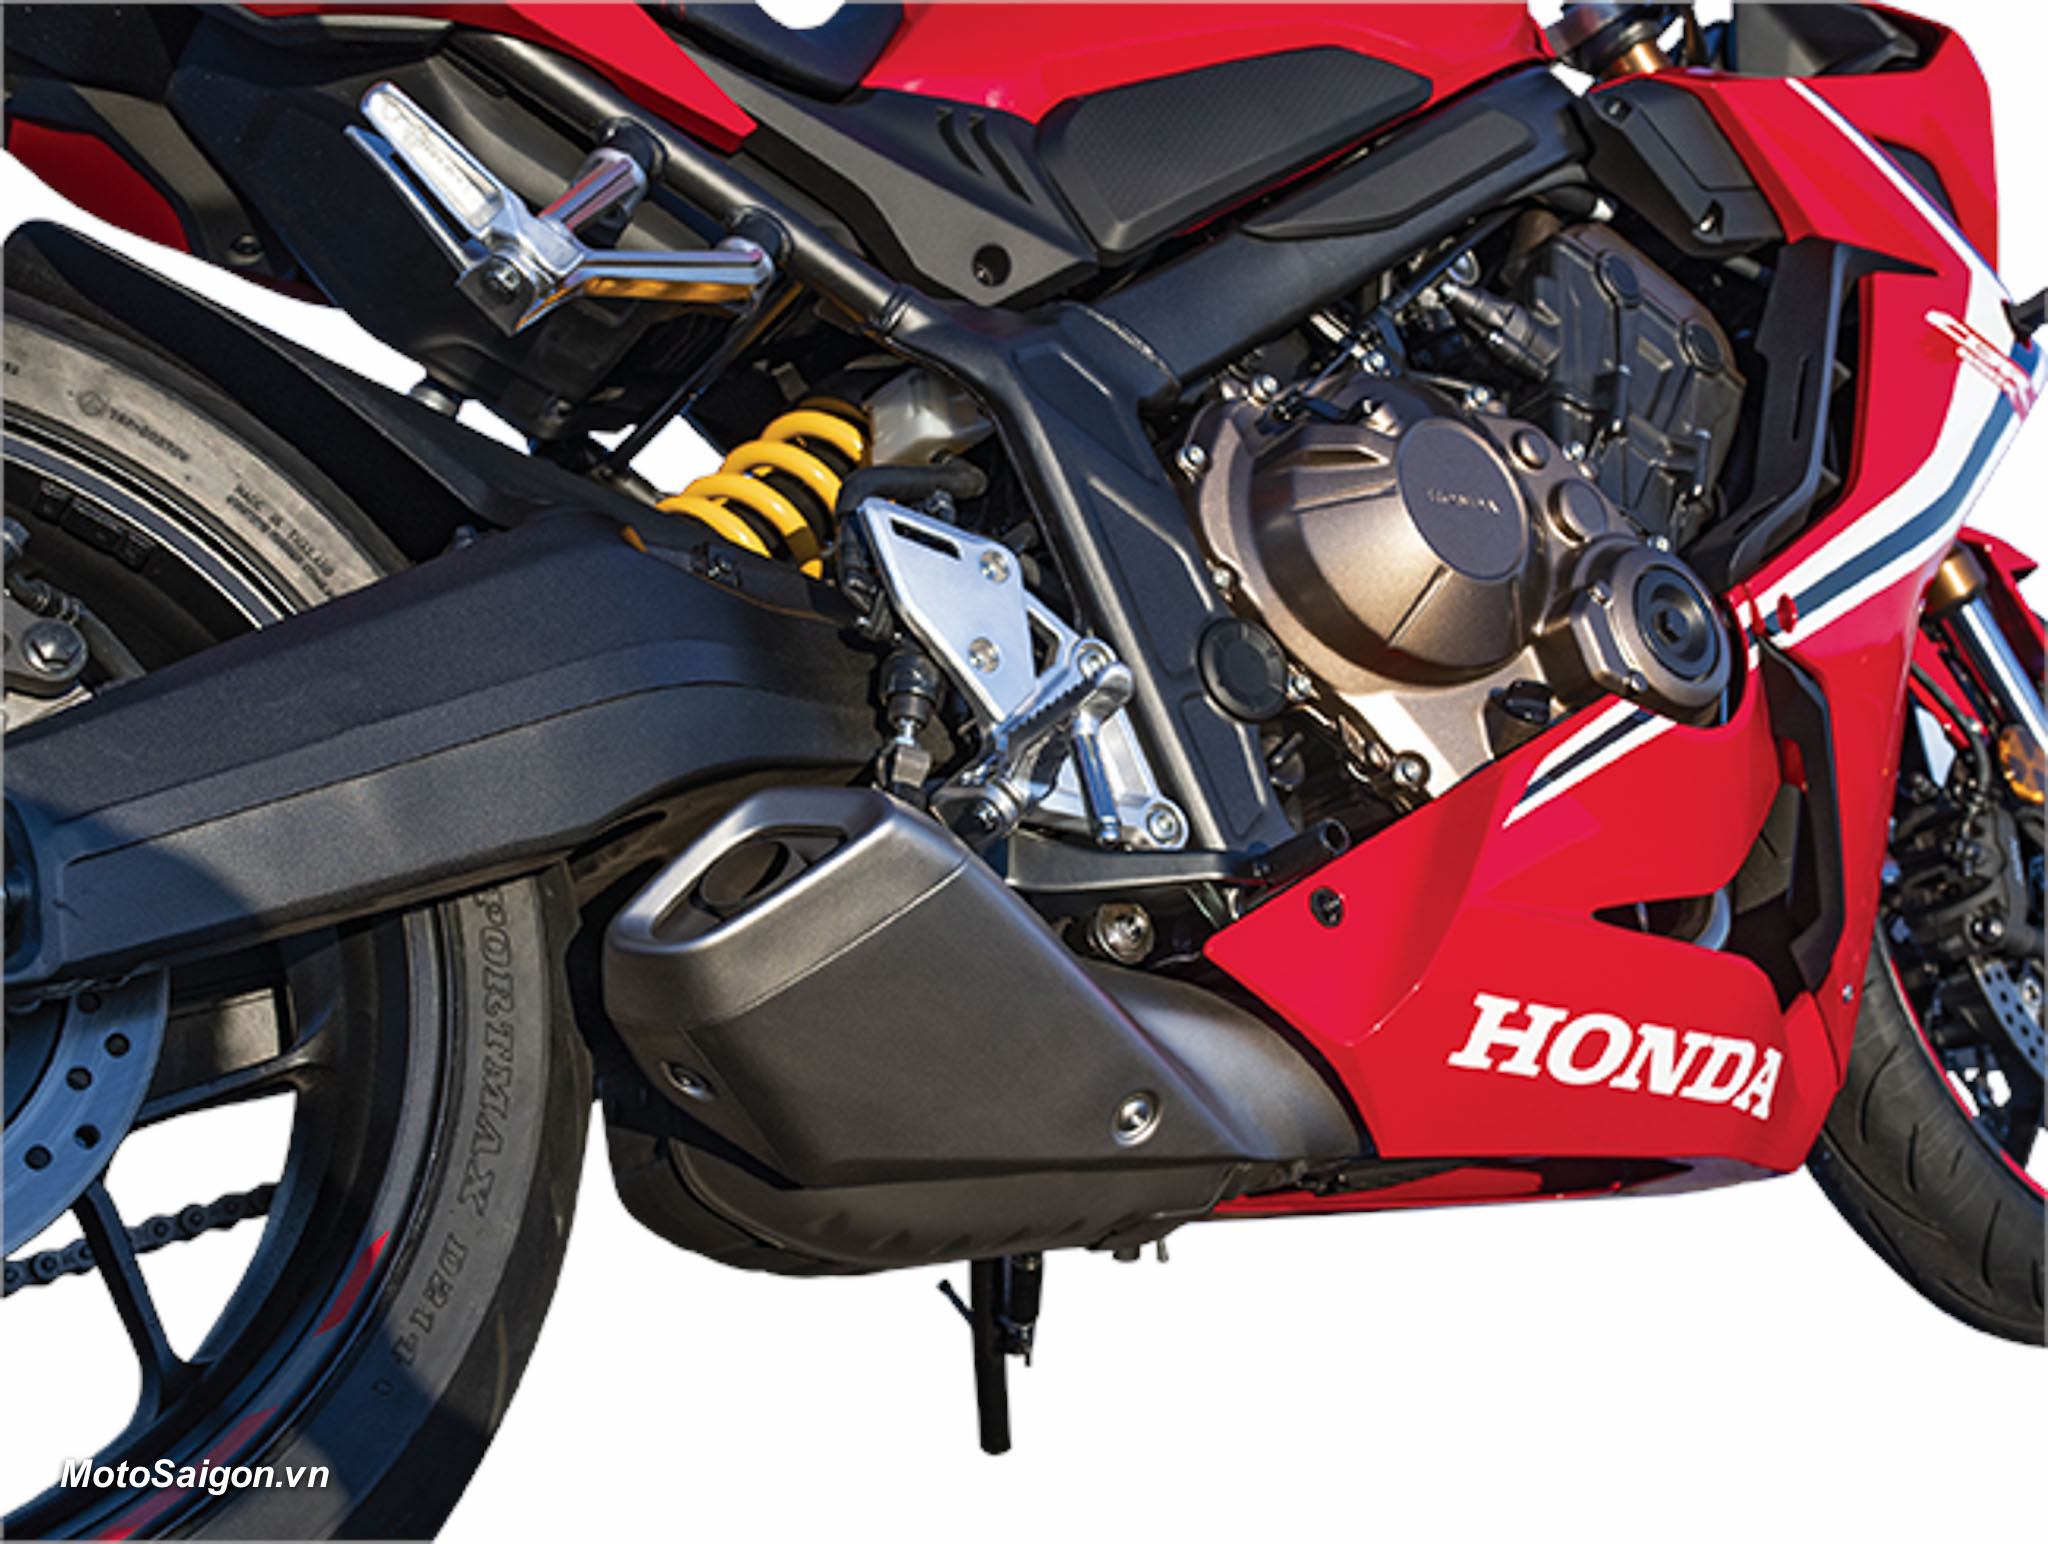 Giá xe Honda CBR650R 2022 phiên bản mới nhất: hình ảnh thông số kỹ thuật, giá bán.